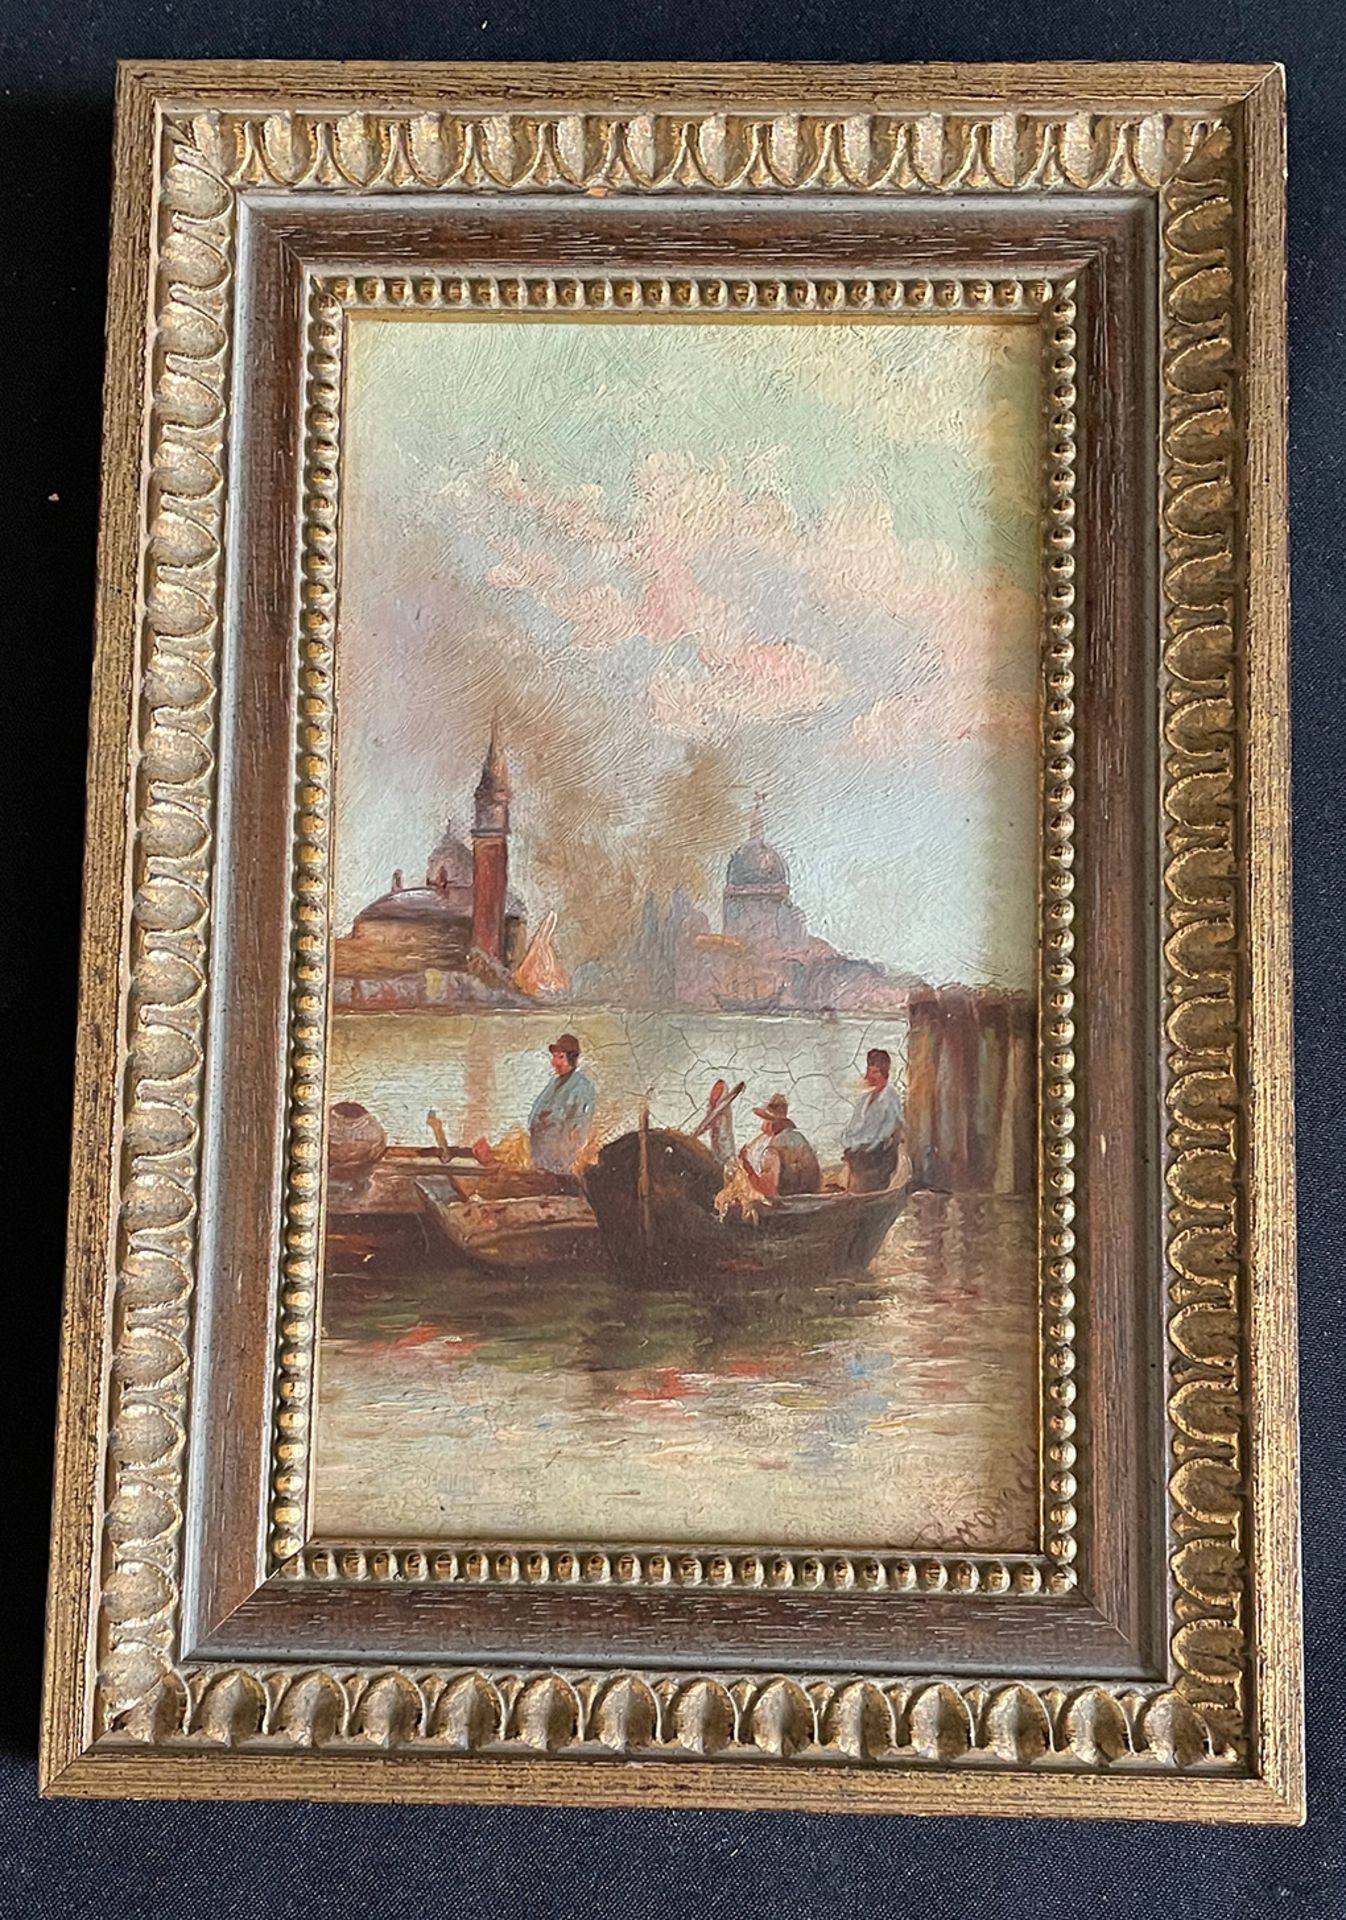 Fischerboote in Venedig, Venecia, signiert, Öl auf Malkarton, 25 x 15 cm - Image 3 of 5